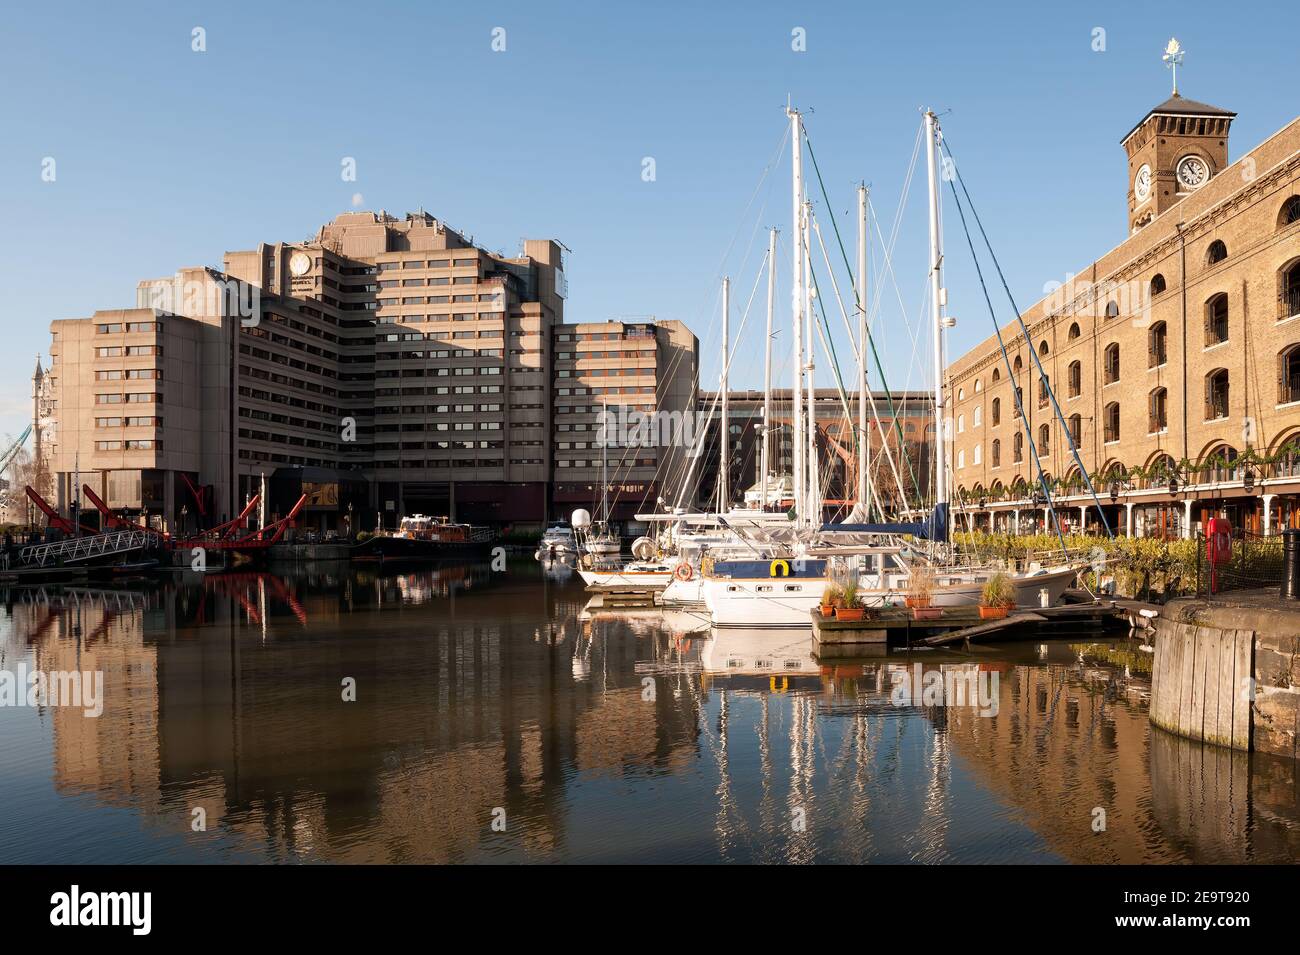 LONDON, Großbritannien - 03. JANUAR 2010: Blick auf die St. Katharine Docks, eine ehemalige Anlegestelle, die jetzt zu einem Wohn- und Freizeitkomplex umbaut wurde Stockfoto